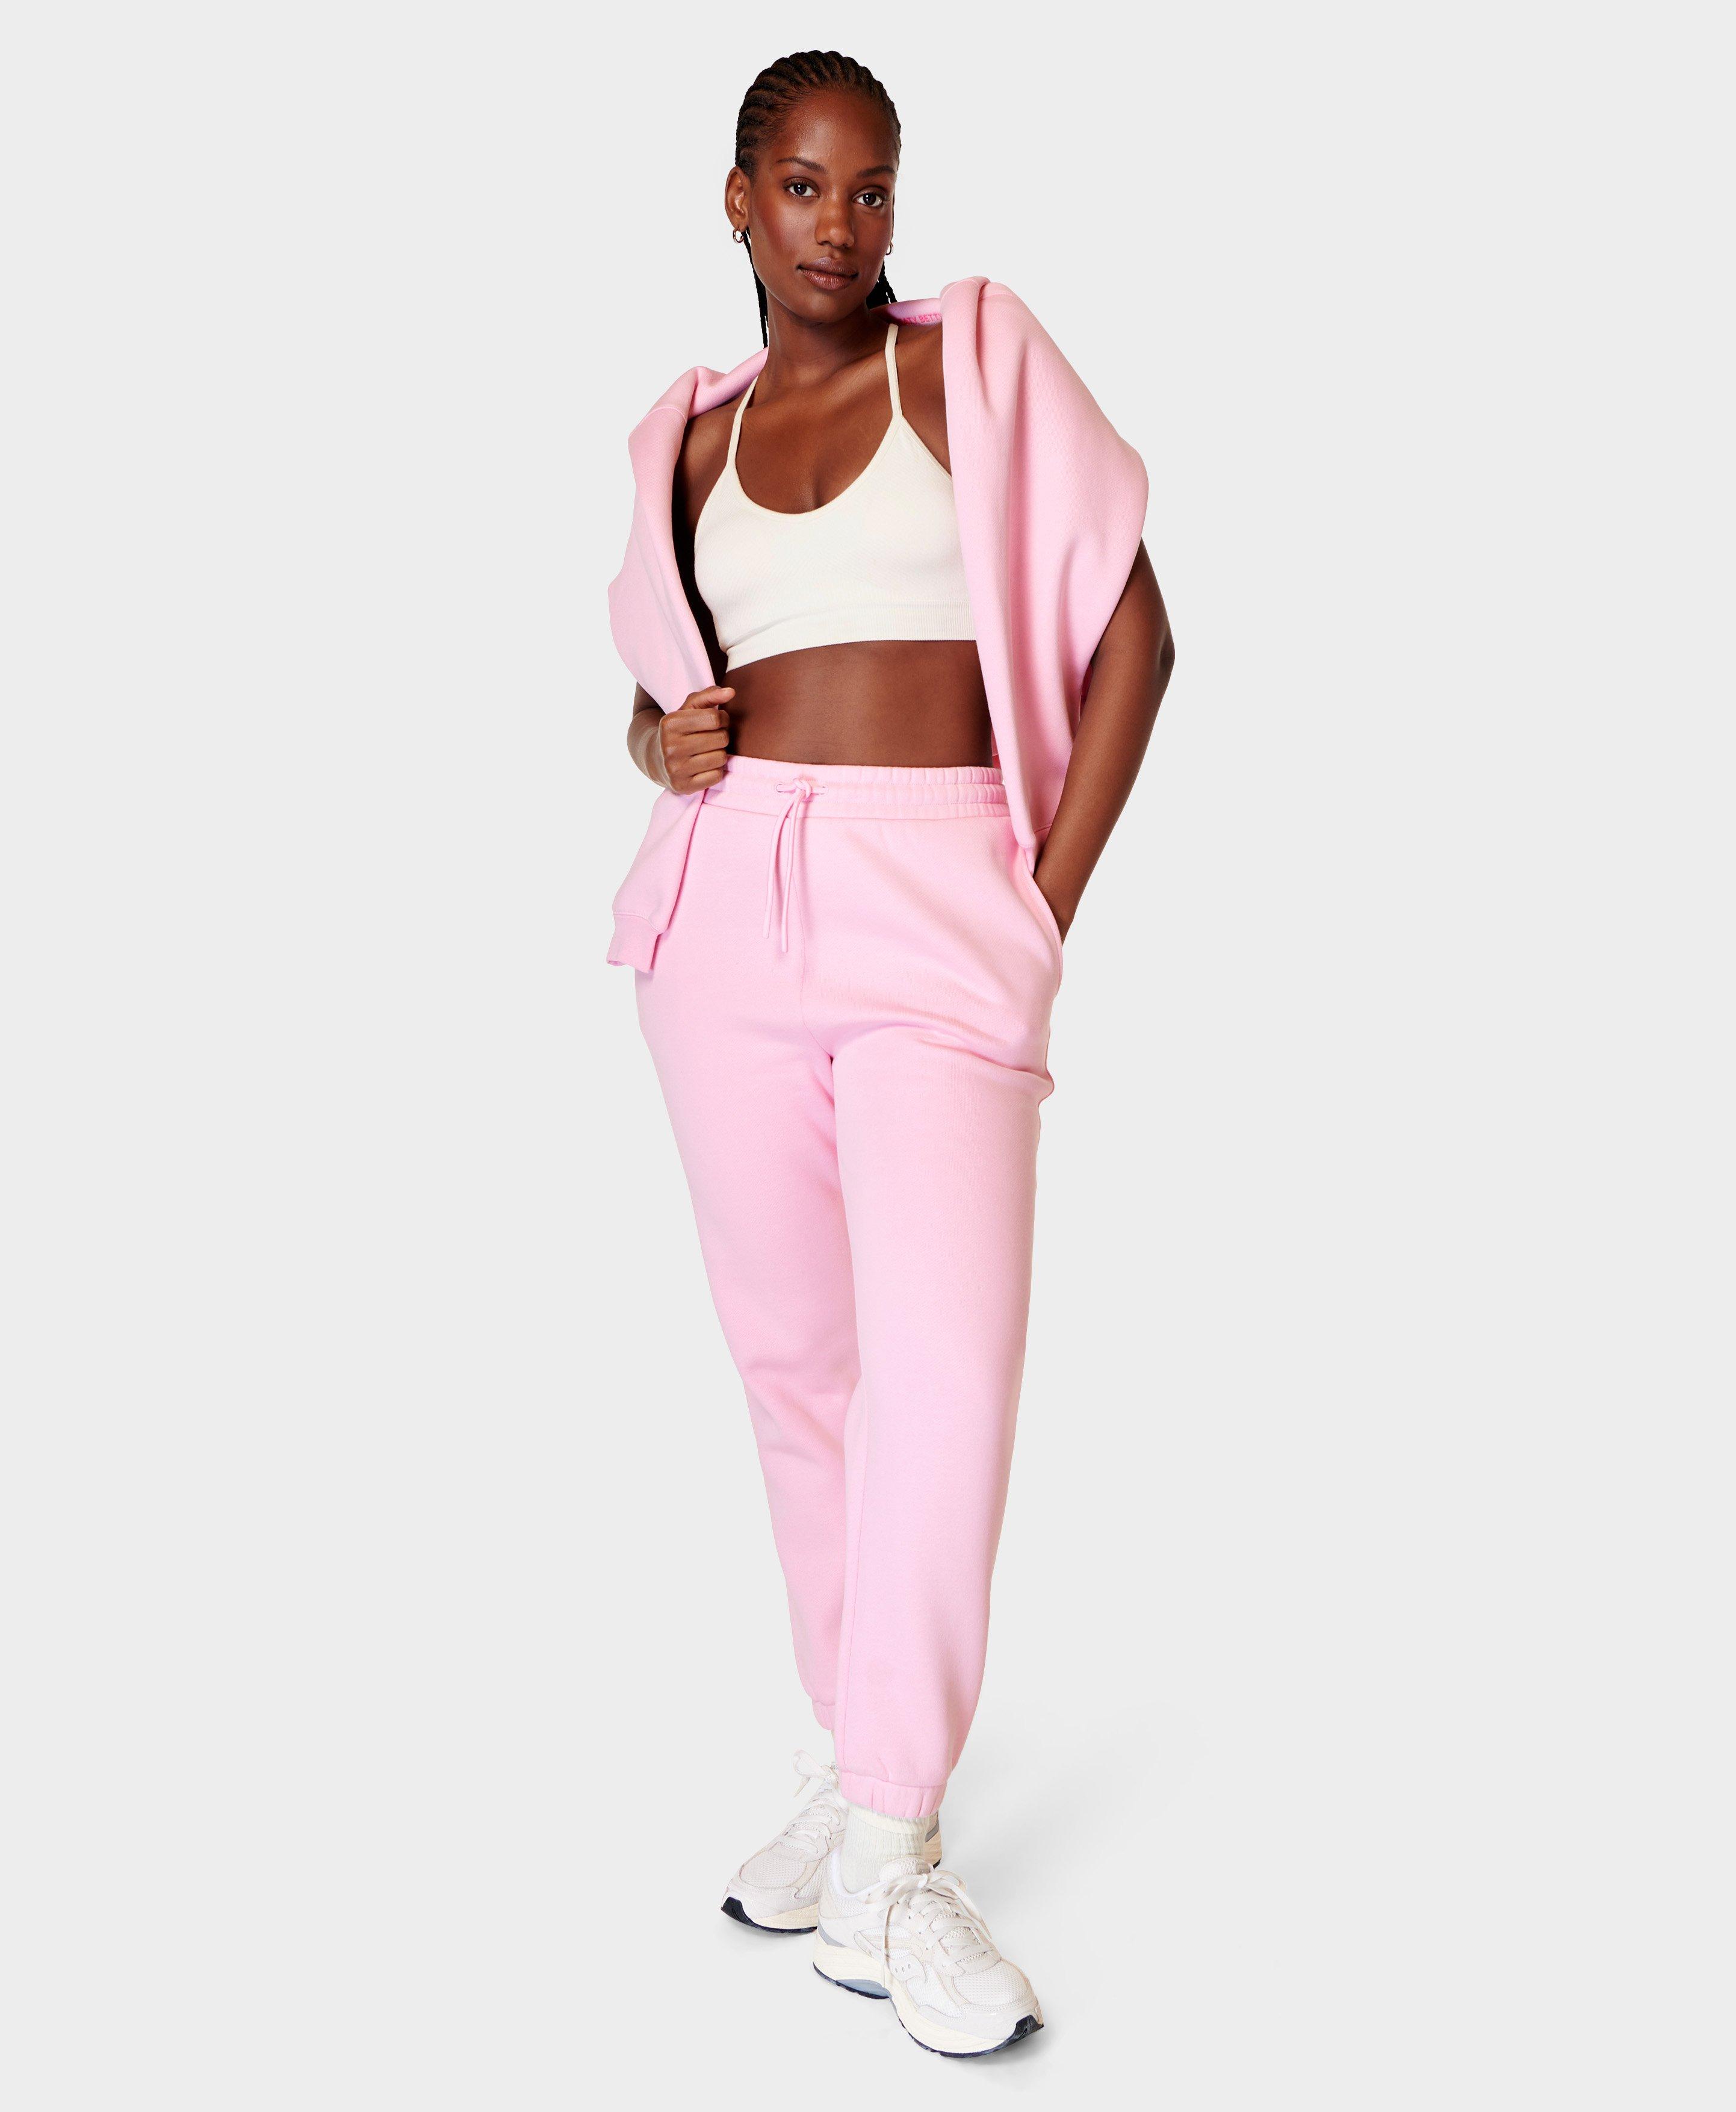 Powerhouse Jogger - Chalk Pink  Women's Trousers & Yoga Pants